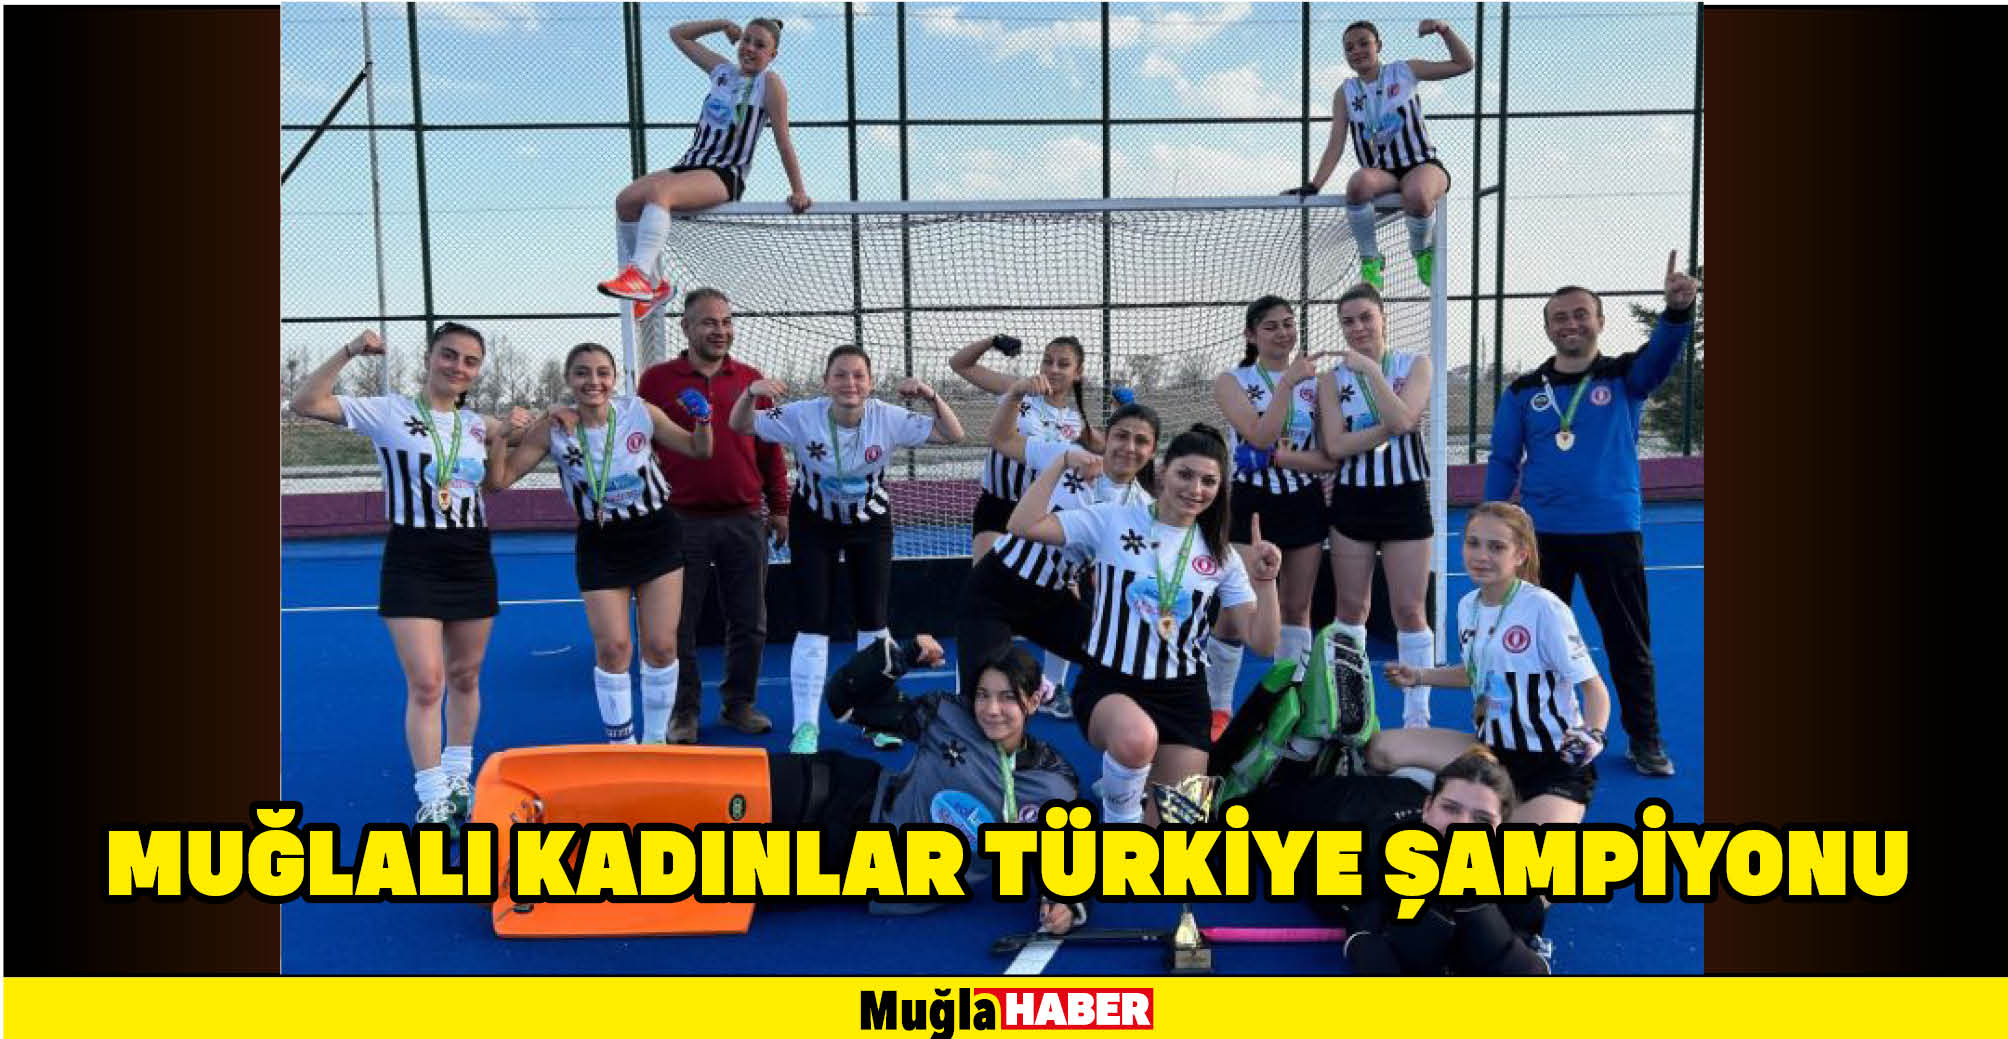 Muğla İl Karması, Türkiye Şampiyonu oldu